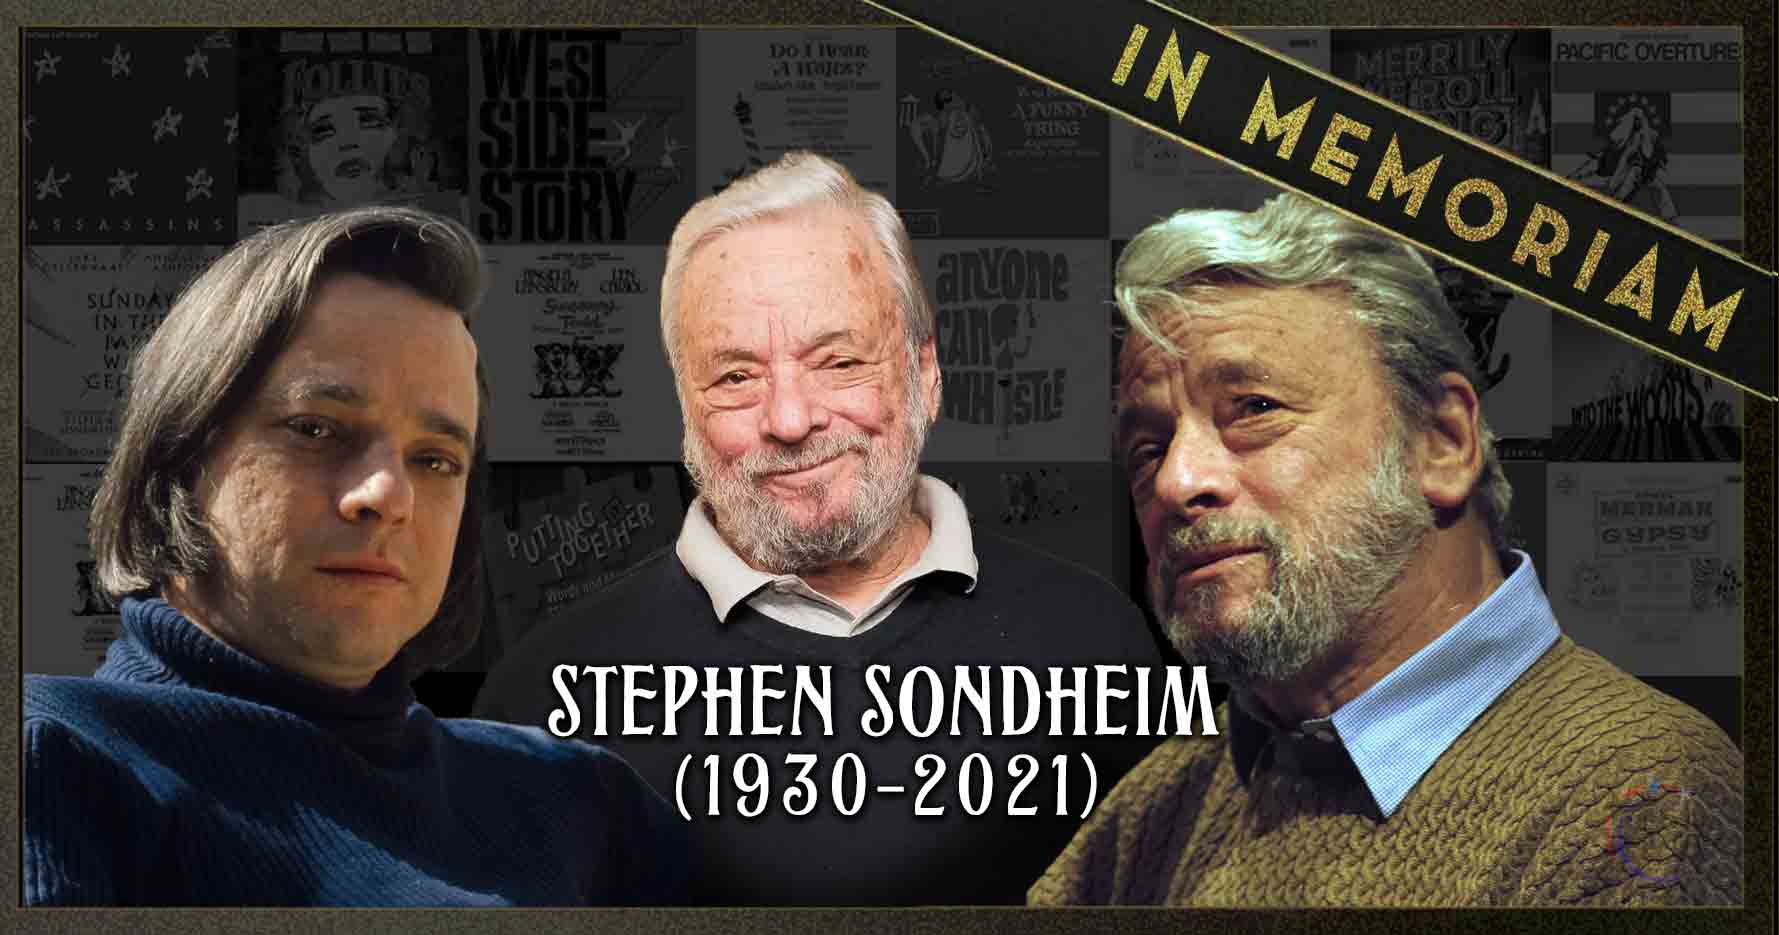 Memoriam Stephen Sondheim: legendary Broadway composer and lyricist